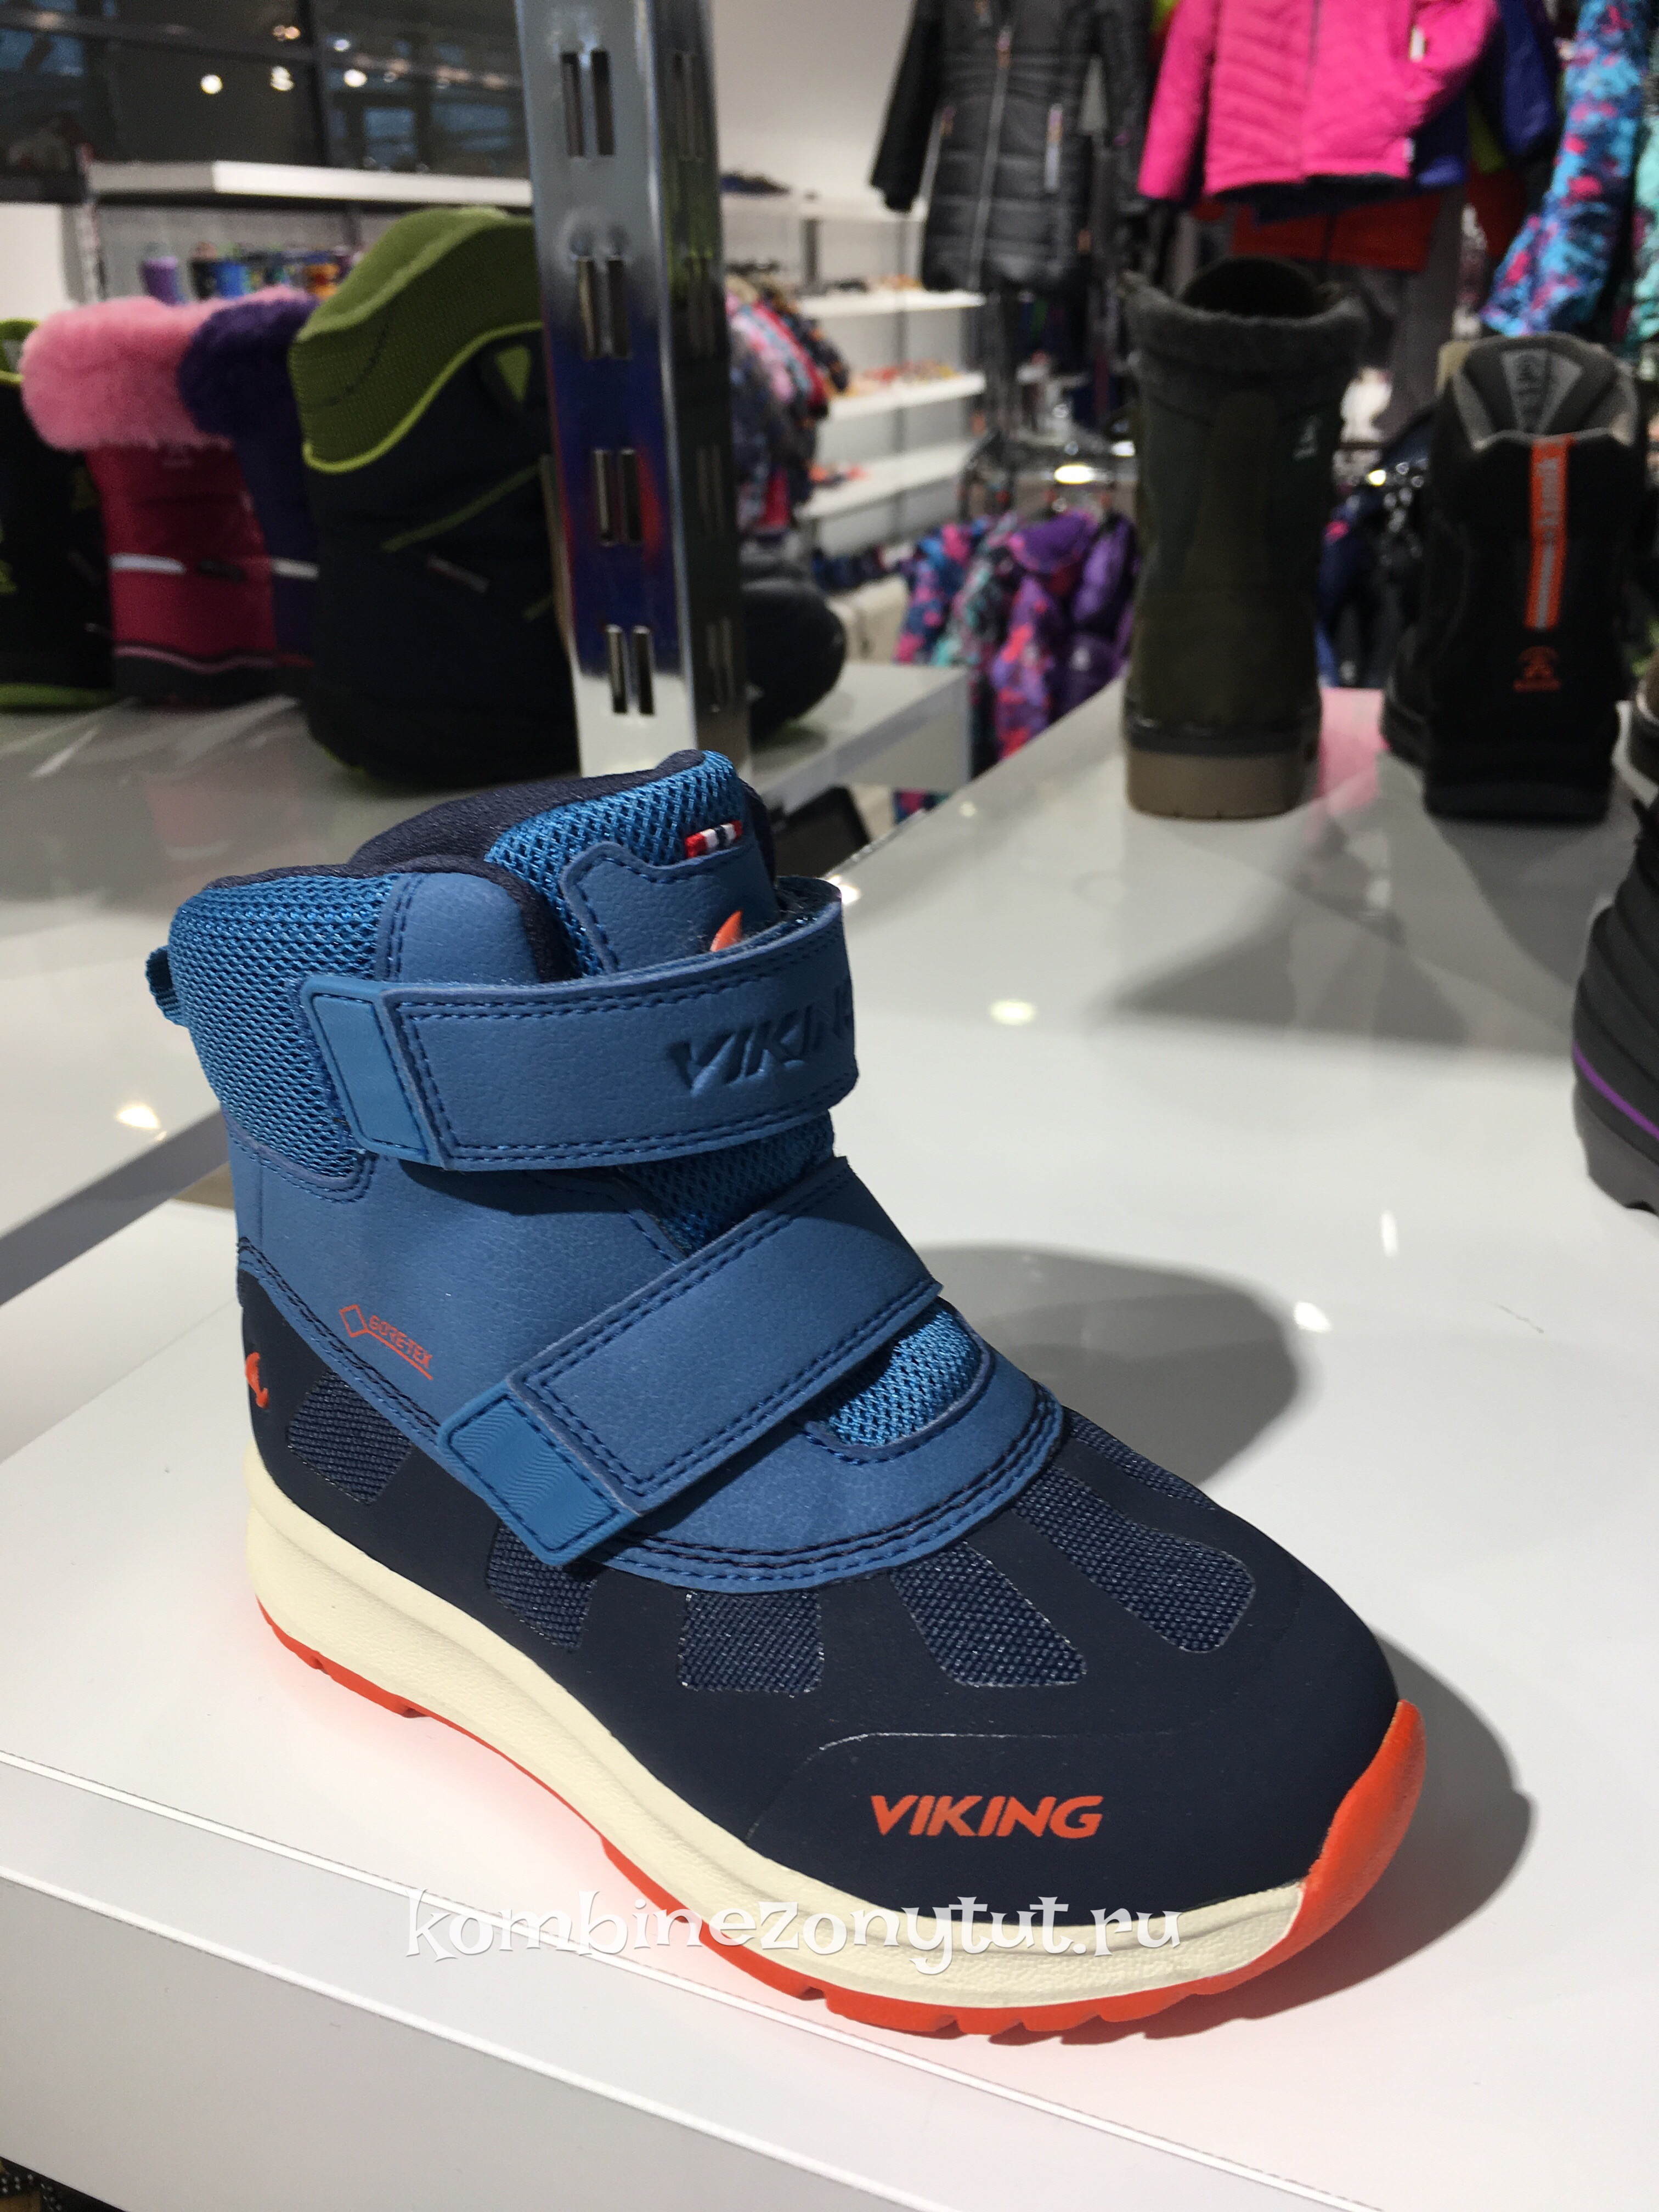 купить в Москве обувь Викинг для ребенка, детская обувь Viking 